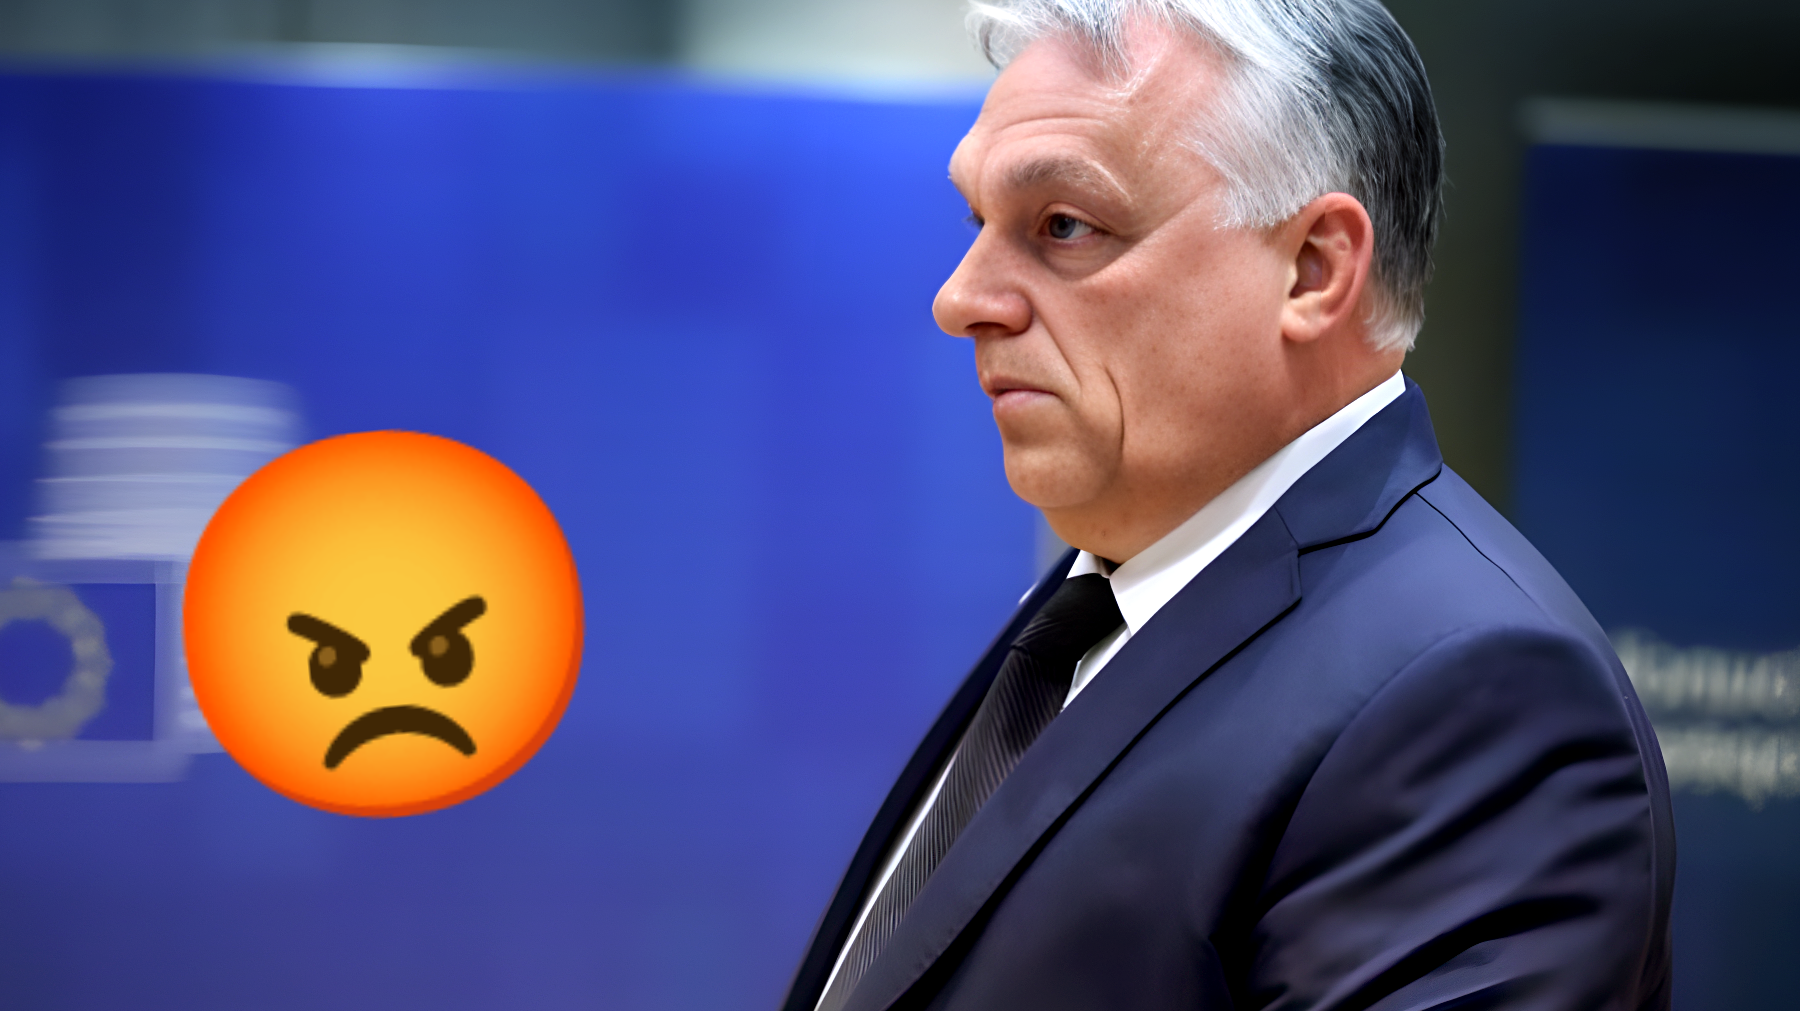 Ucraina, Orban sfida l'UE: "L'avvertimento che fa tremare Bruxelles"